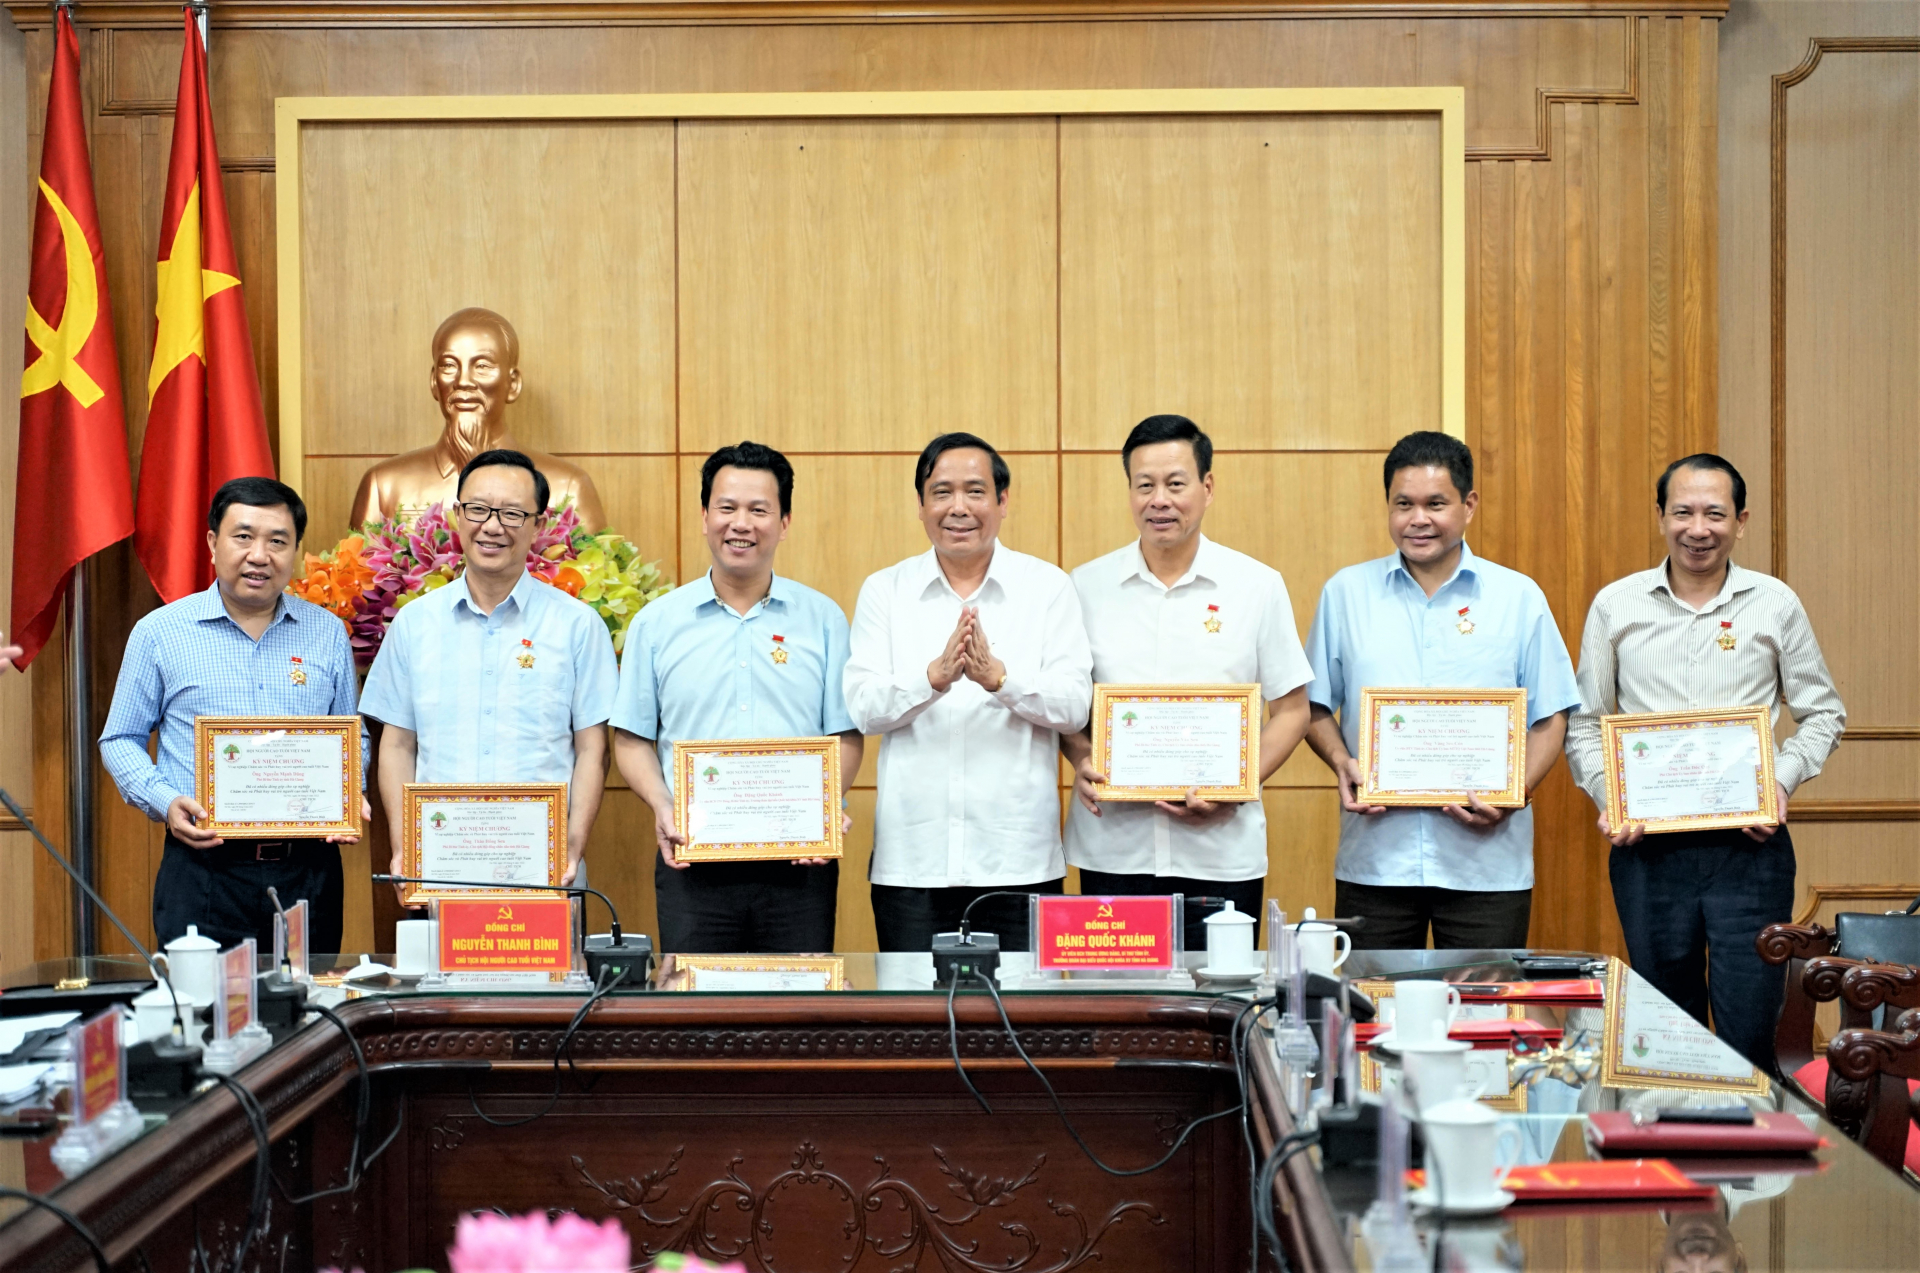 Chủ tịch Hội NCT Việt Nam Nguyễn Thanh Bình trao Kỷ niệm chương cho các cá nhân của tỉnh vì “Đã có nhiều đóng góp cho sự nghiệp chăm sóc và phát huy vai trò NCT Việt Nam”.